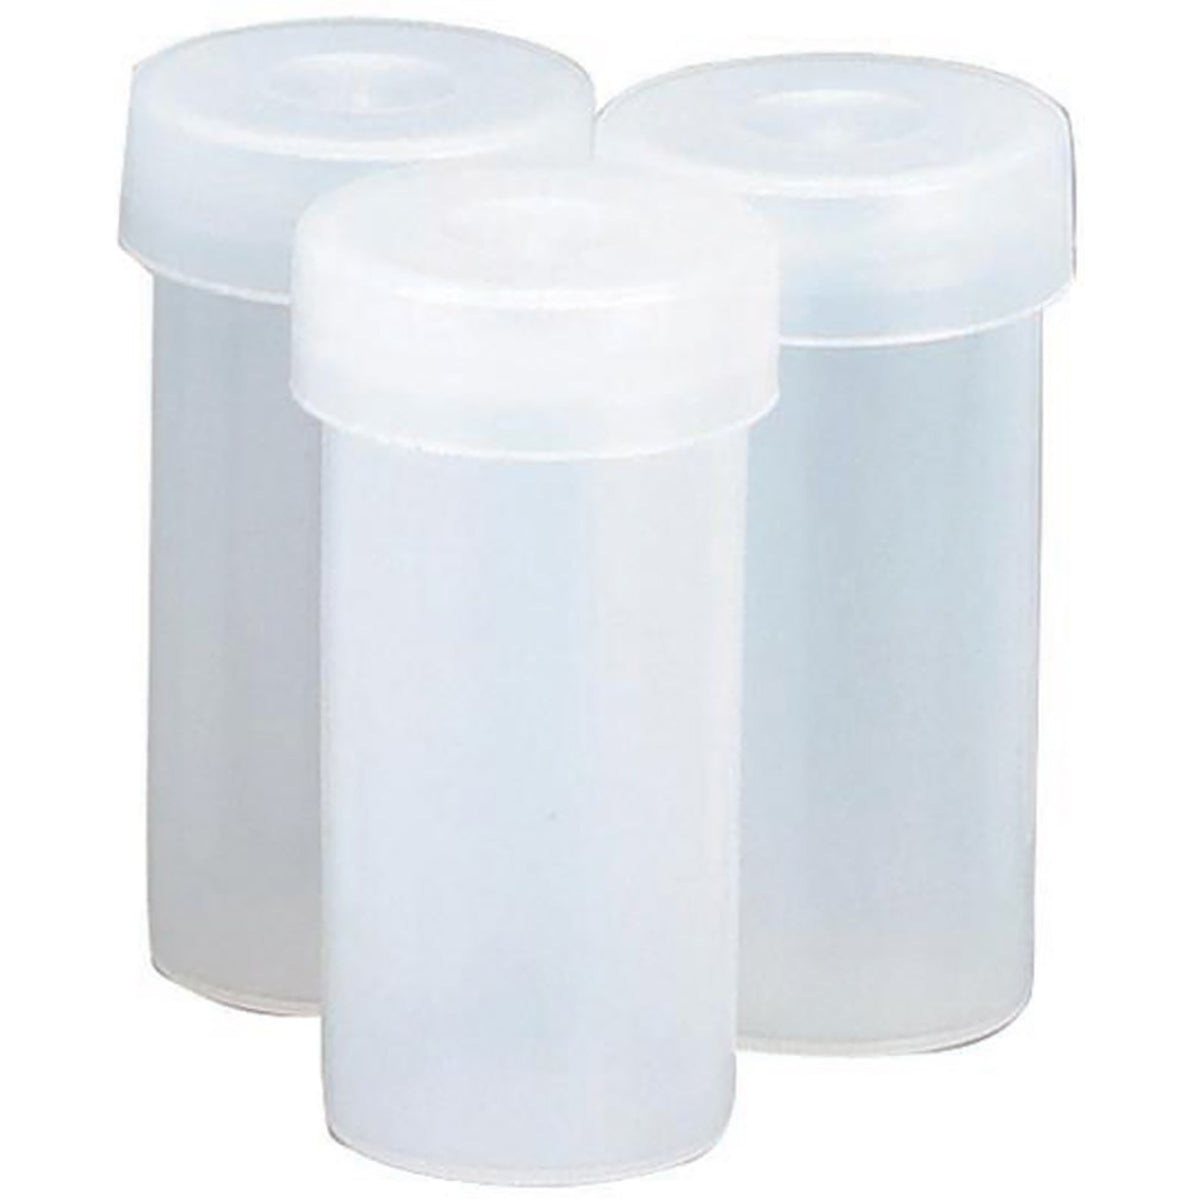 Nalgene Snap-Cap Plastic Vial - White Nalgene